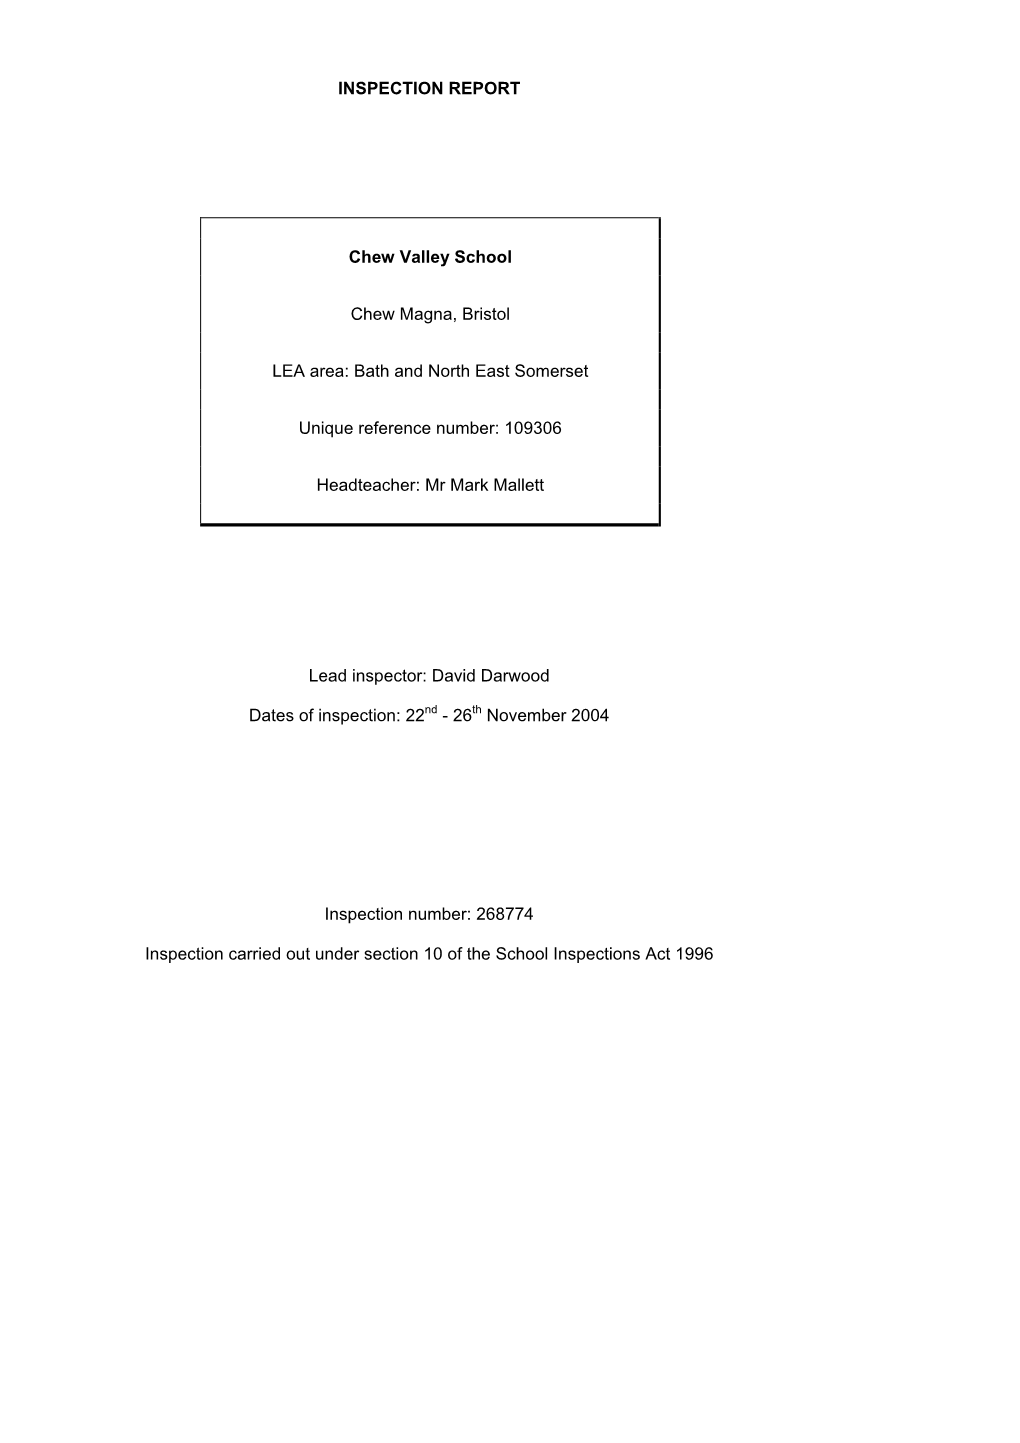 INSPECTION REPORT Chew Valley School Chew Magna, Bristol LEA